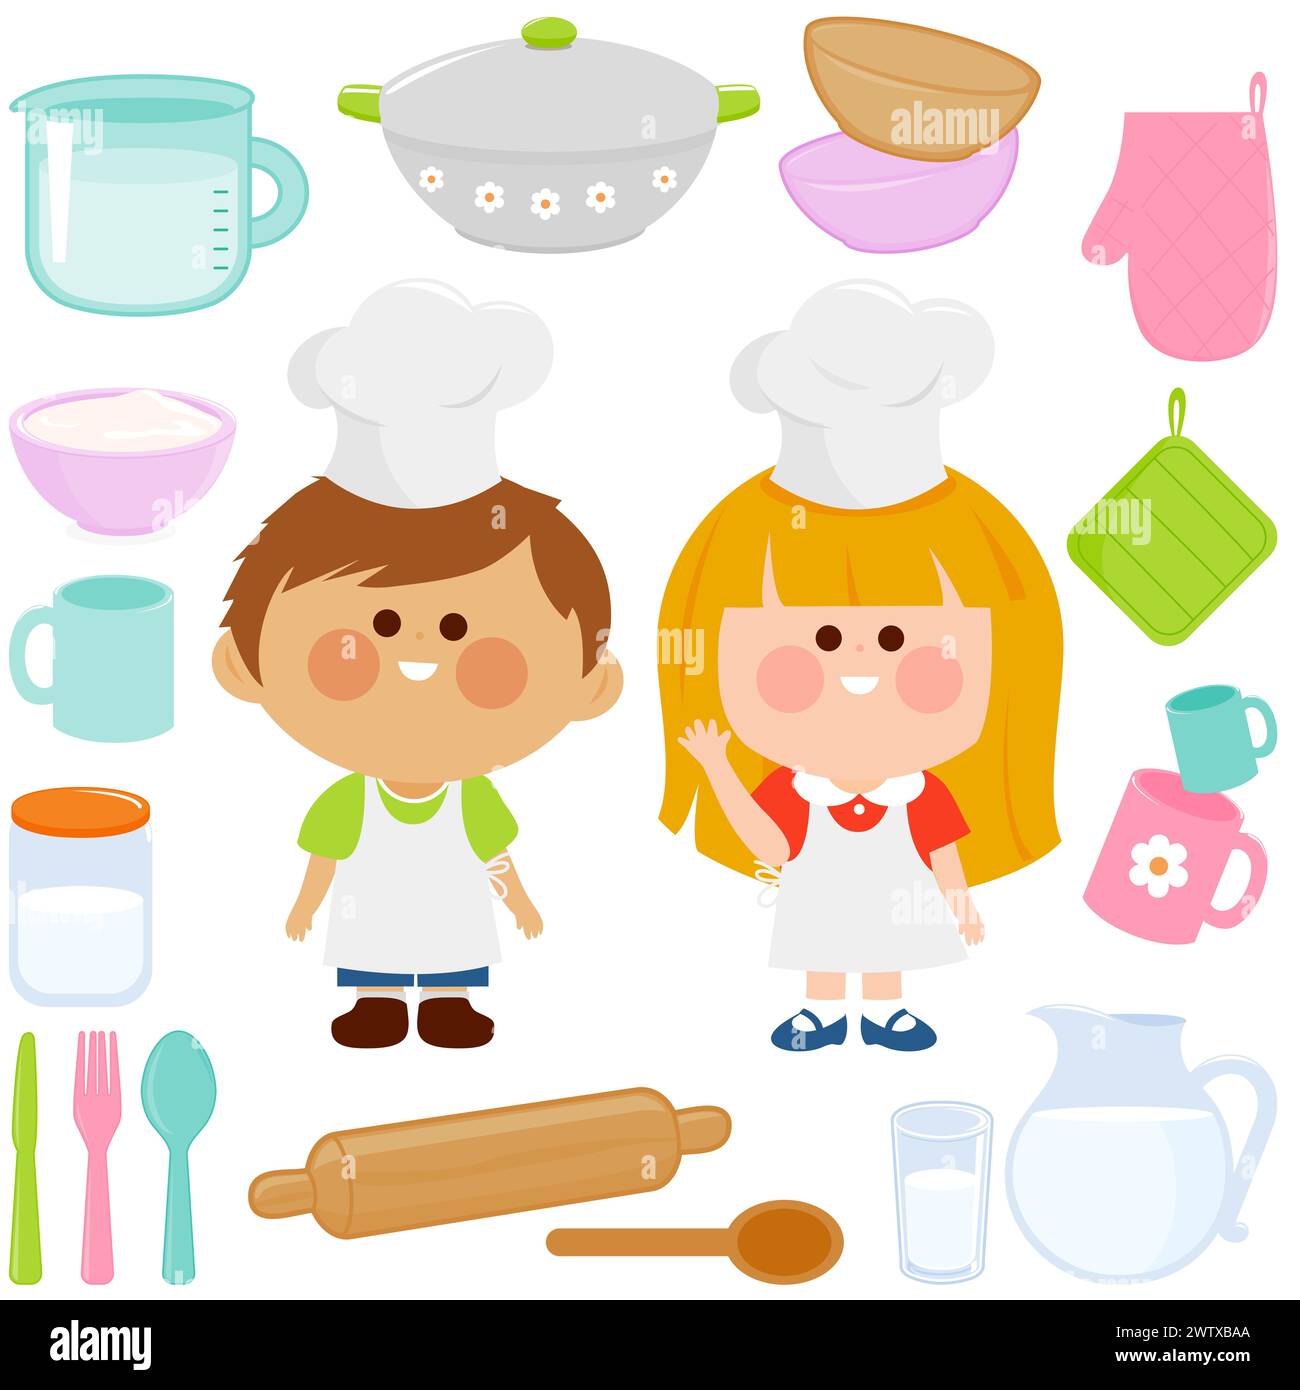 Cuocere i bambini alla panetteria. Cuochi per bambini con utensili da cucina. Utensili da cucina e stoviglie per cucinare e cucinare in casa. Foto Stock